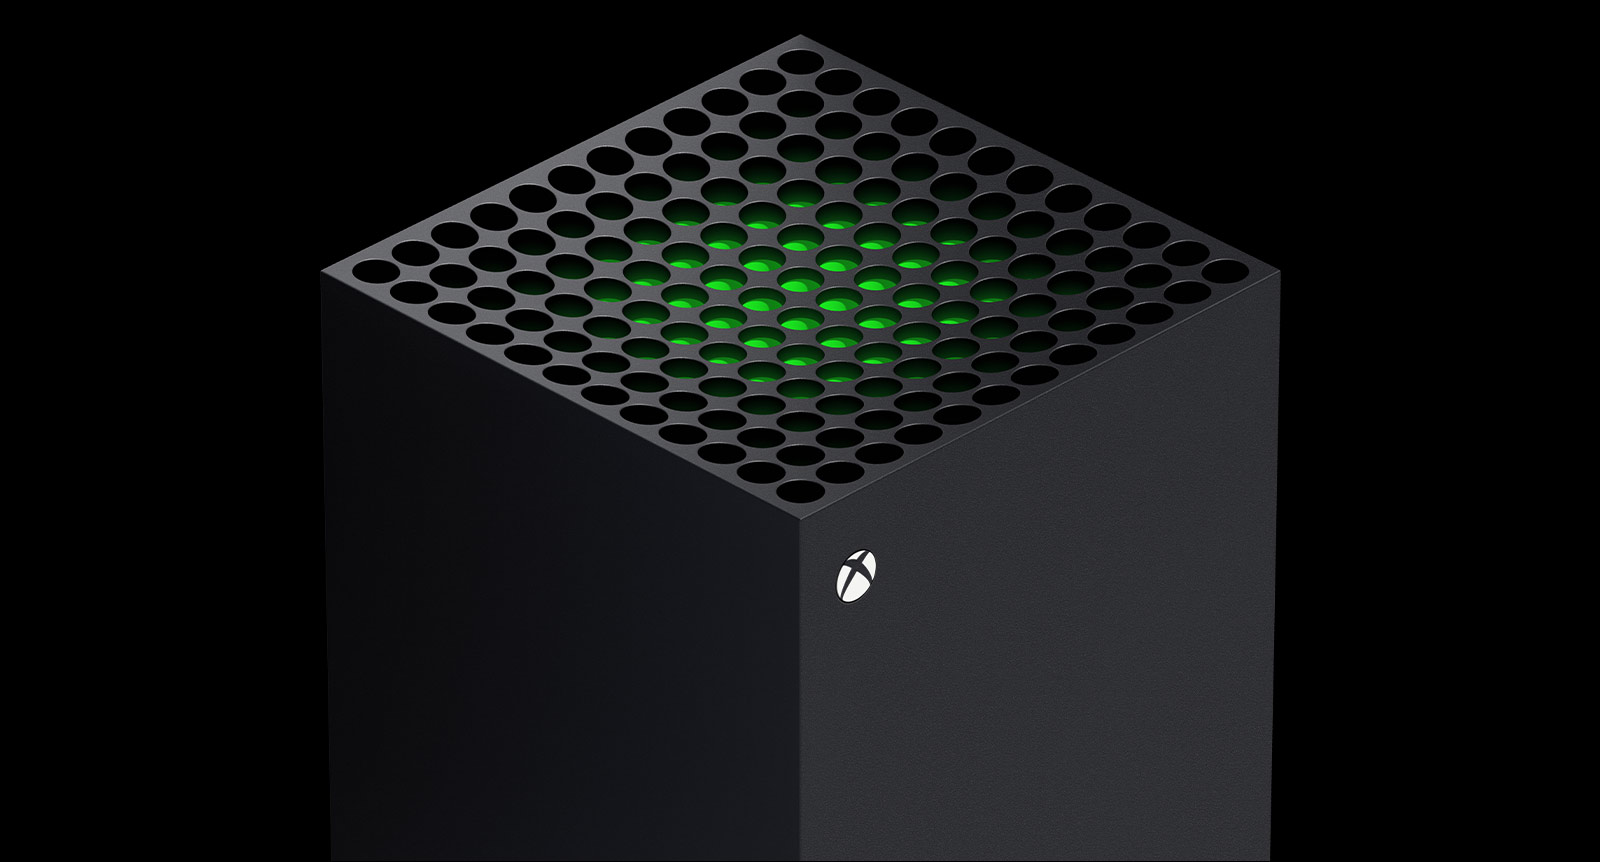 Xbox Series X in 2022 5 topgames om naar uit